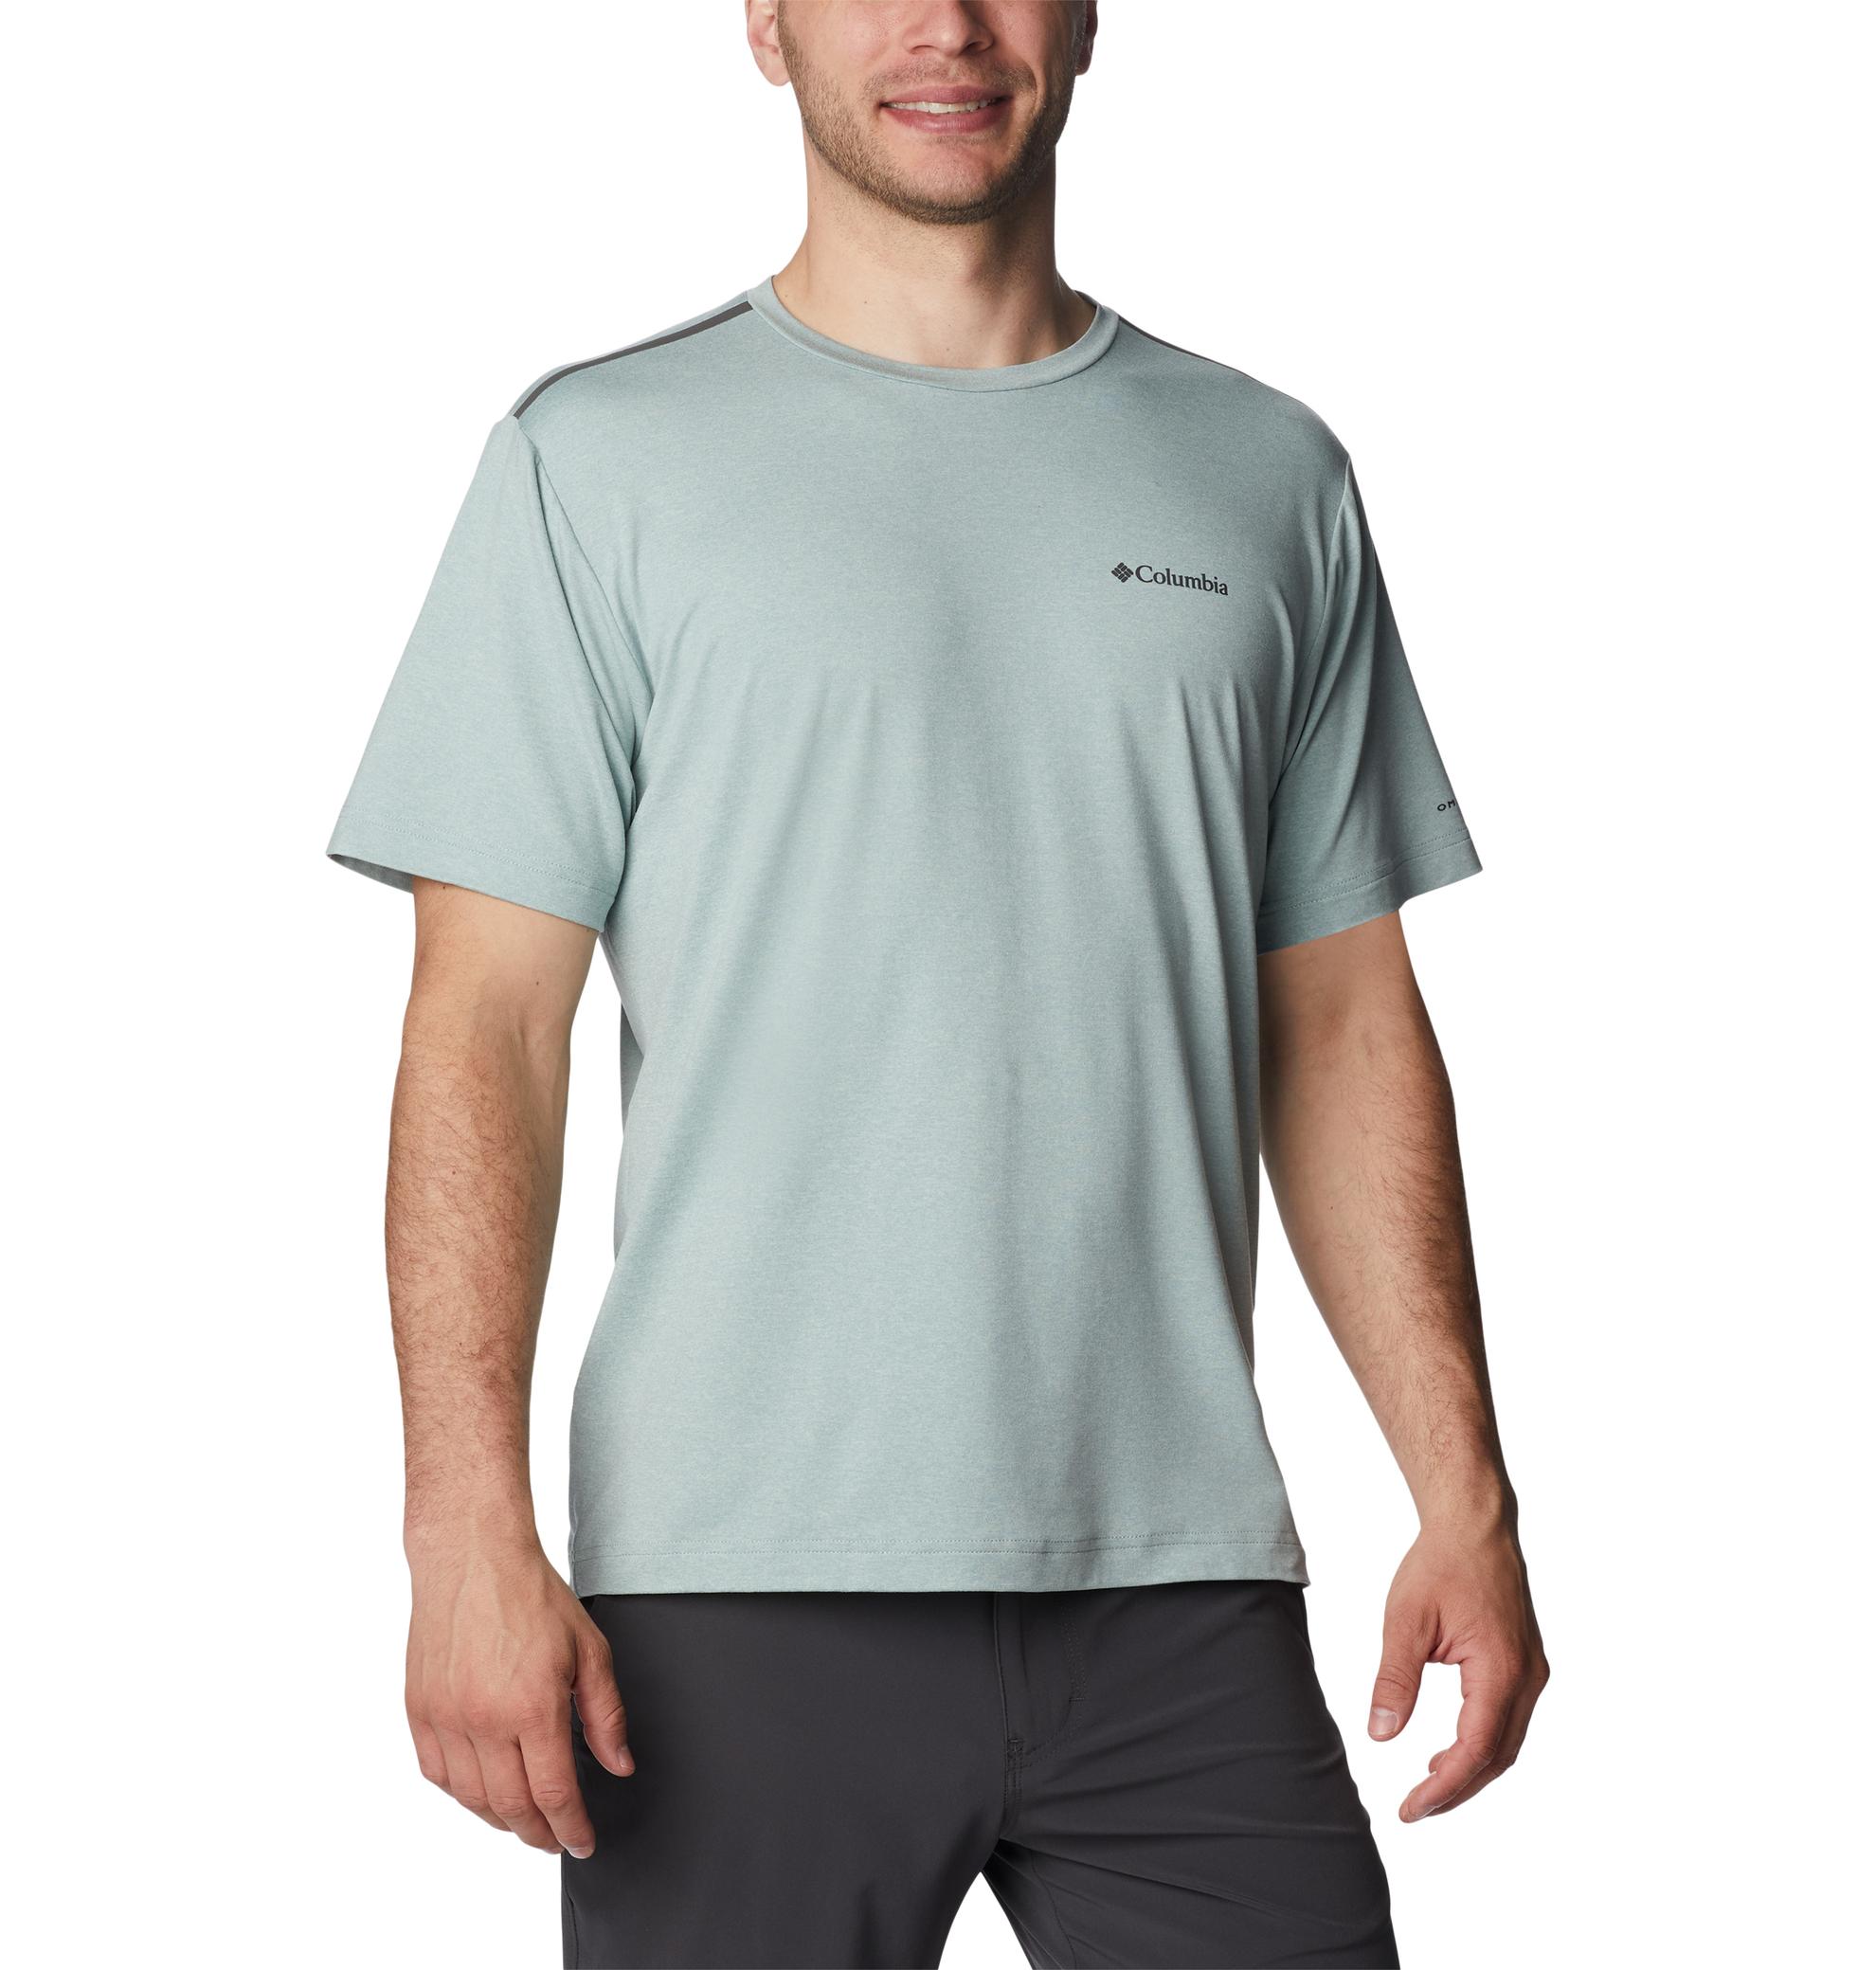 Oferta de Camisetas Para Senderismo Tech Trail Crew Neck Para Hombre por $219900 en Columbia